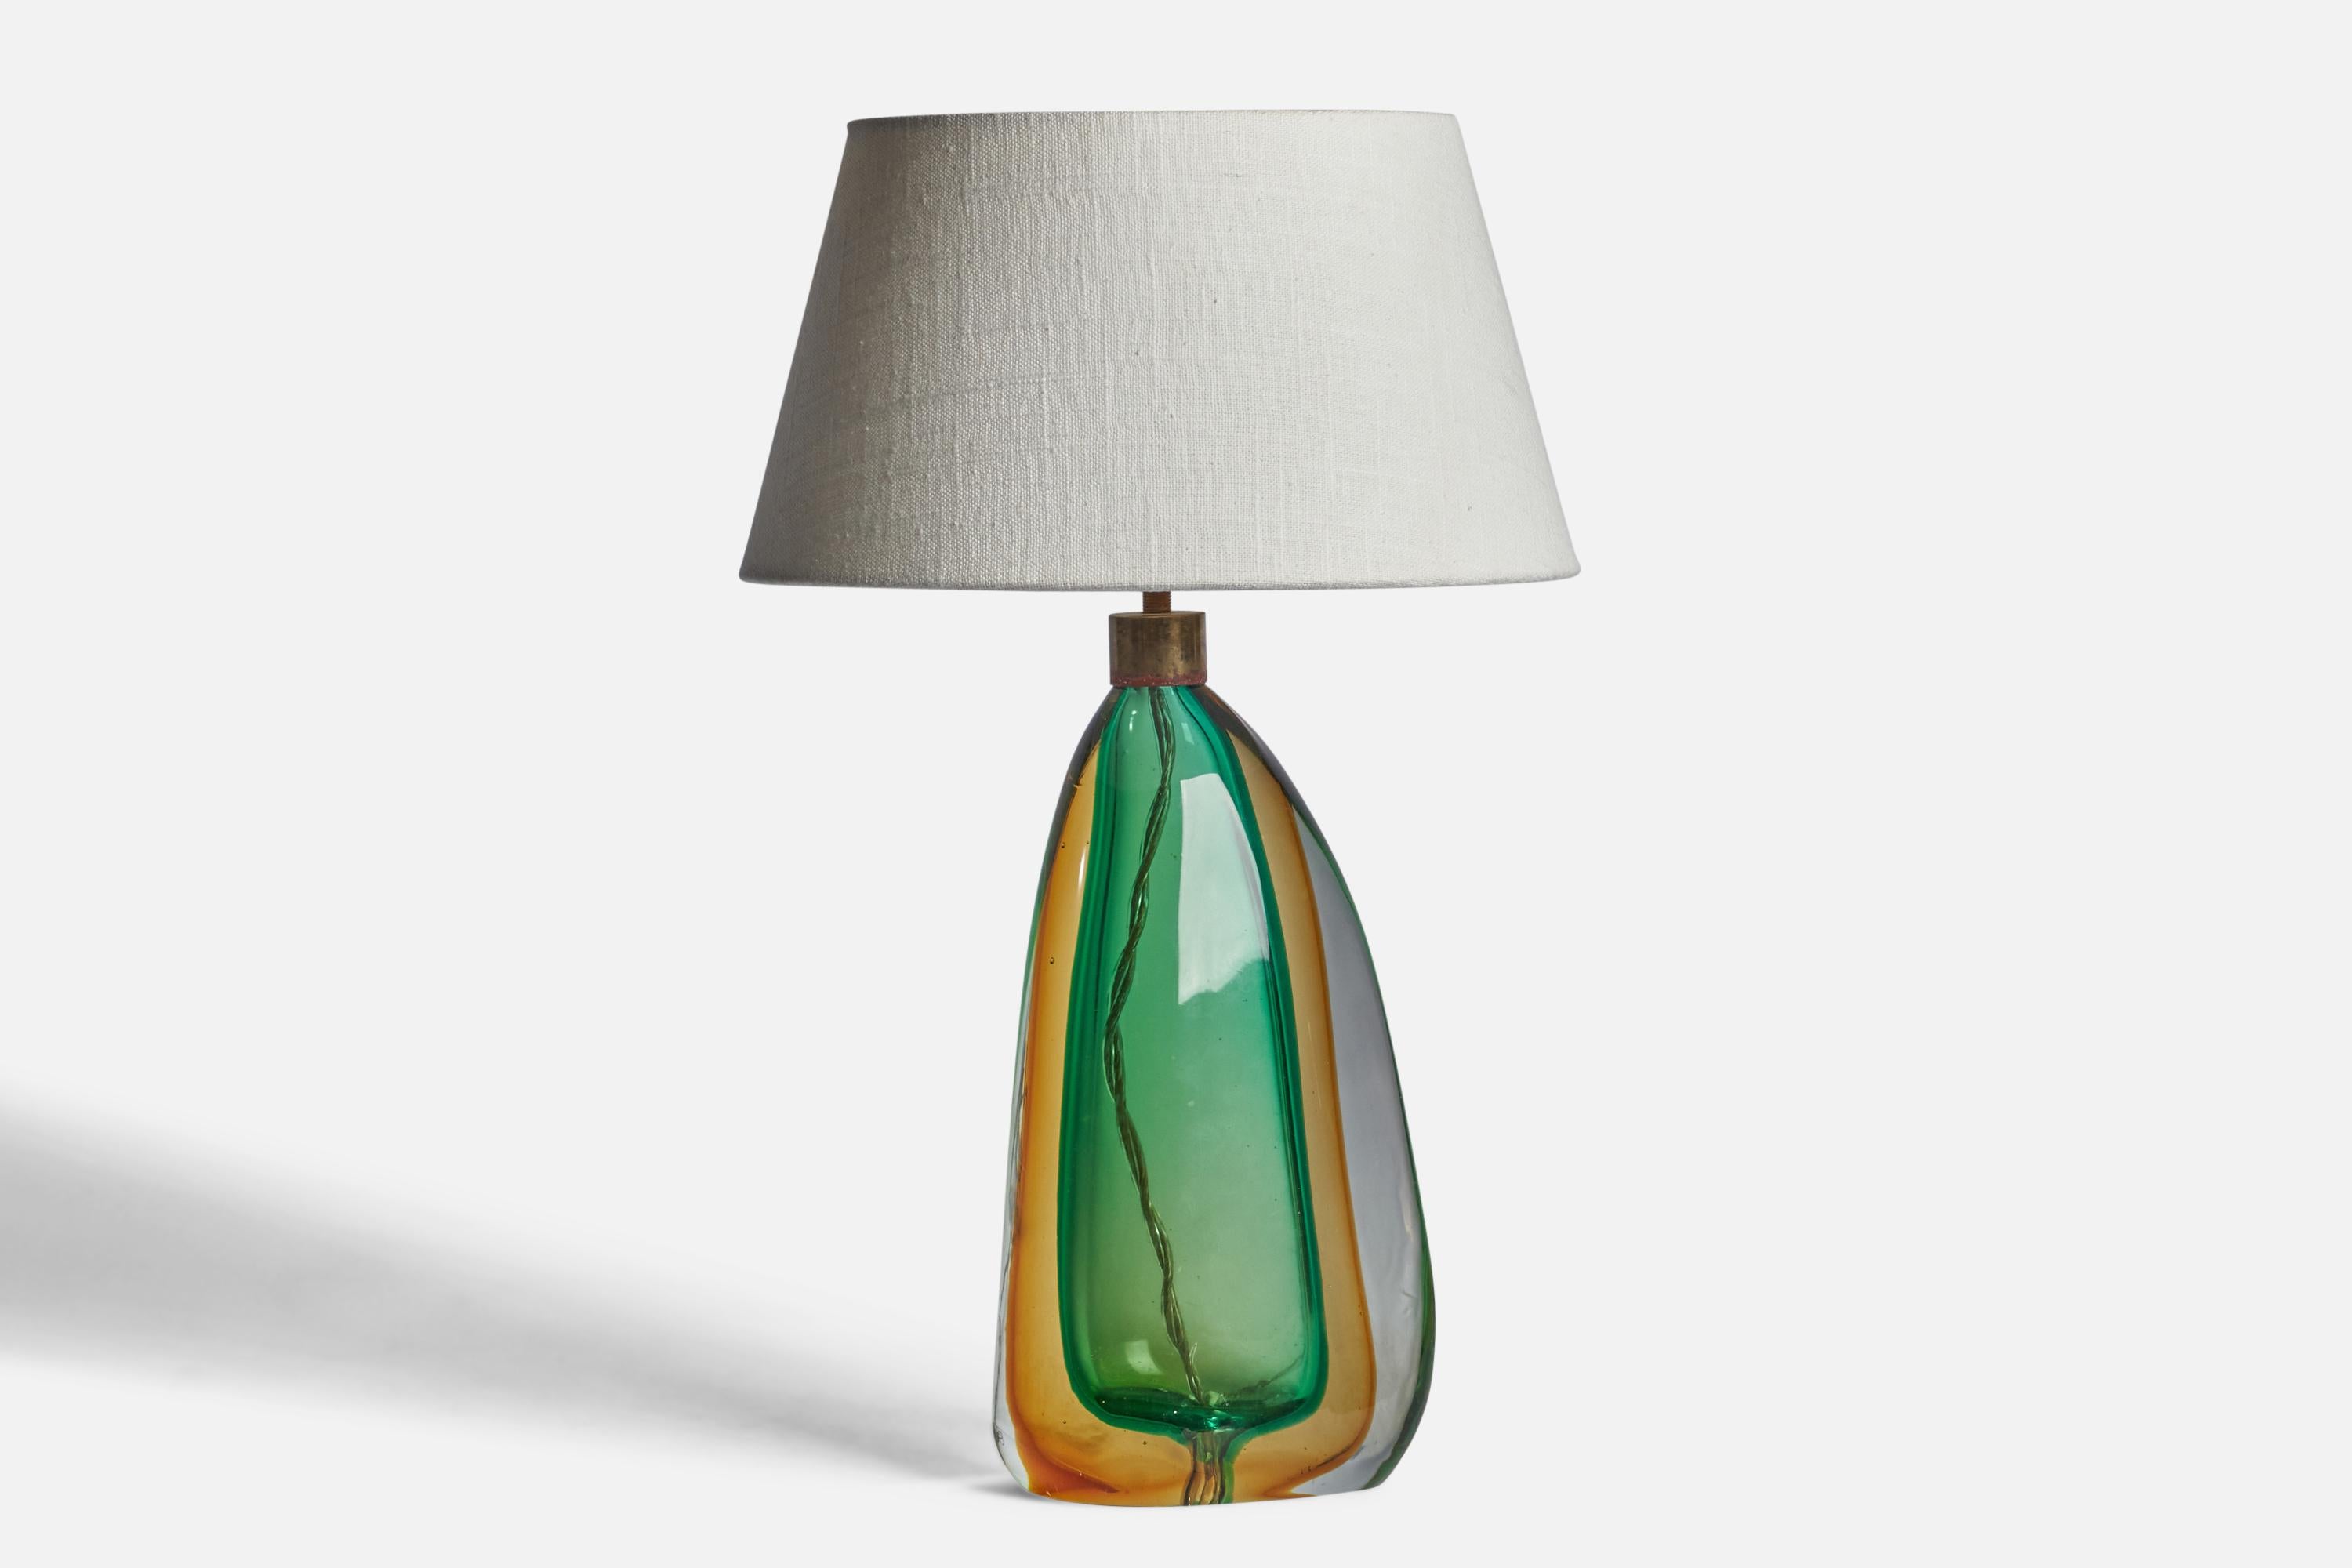 Lampe de table en verre soufflé et laiton de couleur verte et orange, conçue et produite à Murano, Italie, vers les années 1940.

Dimensions de la lampe (pouces) : 13